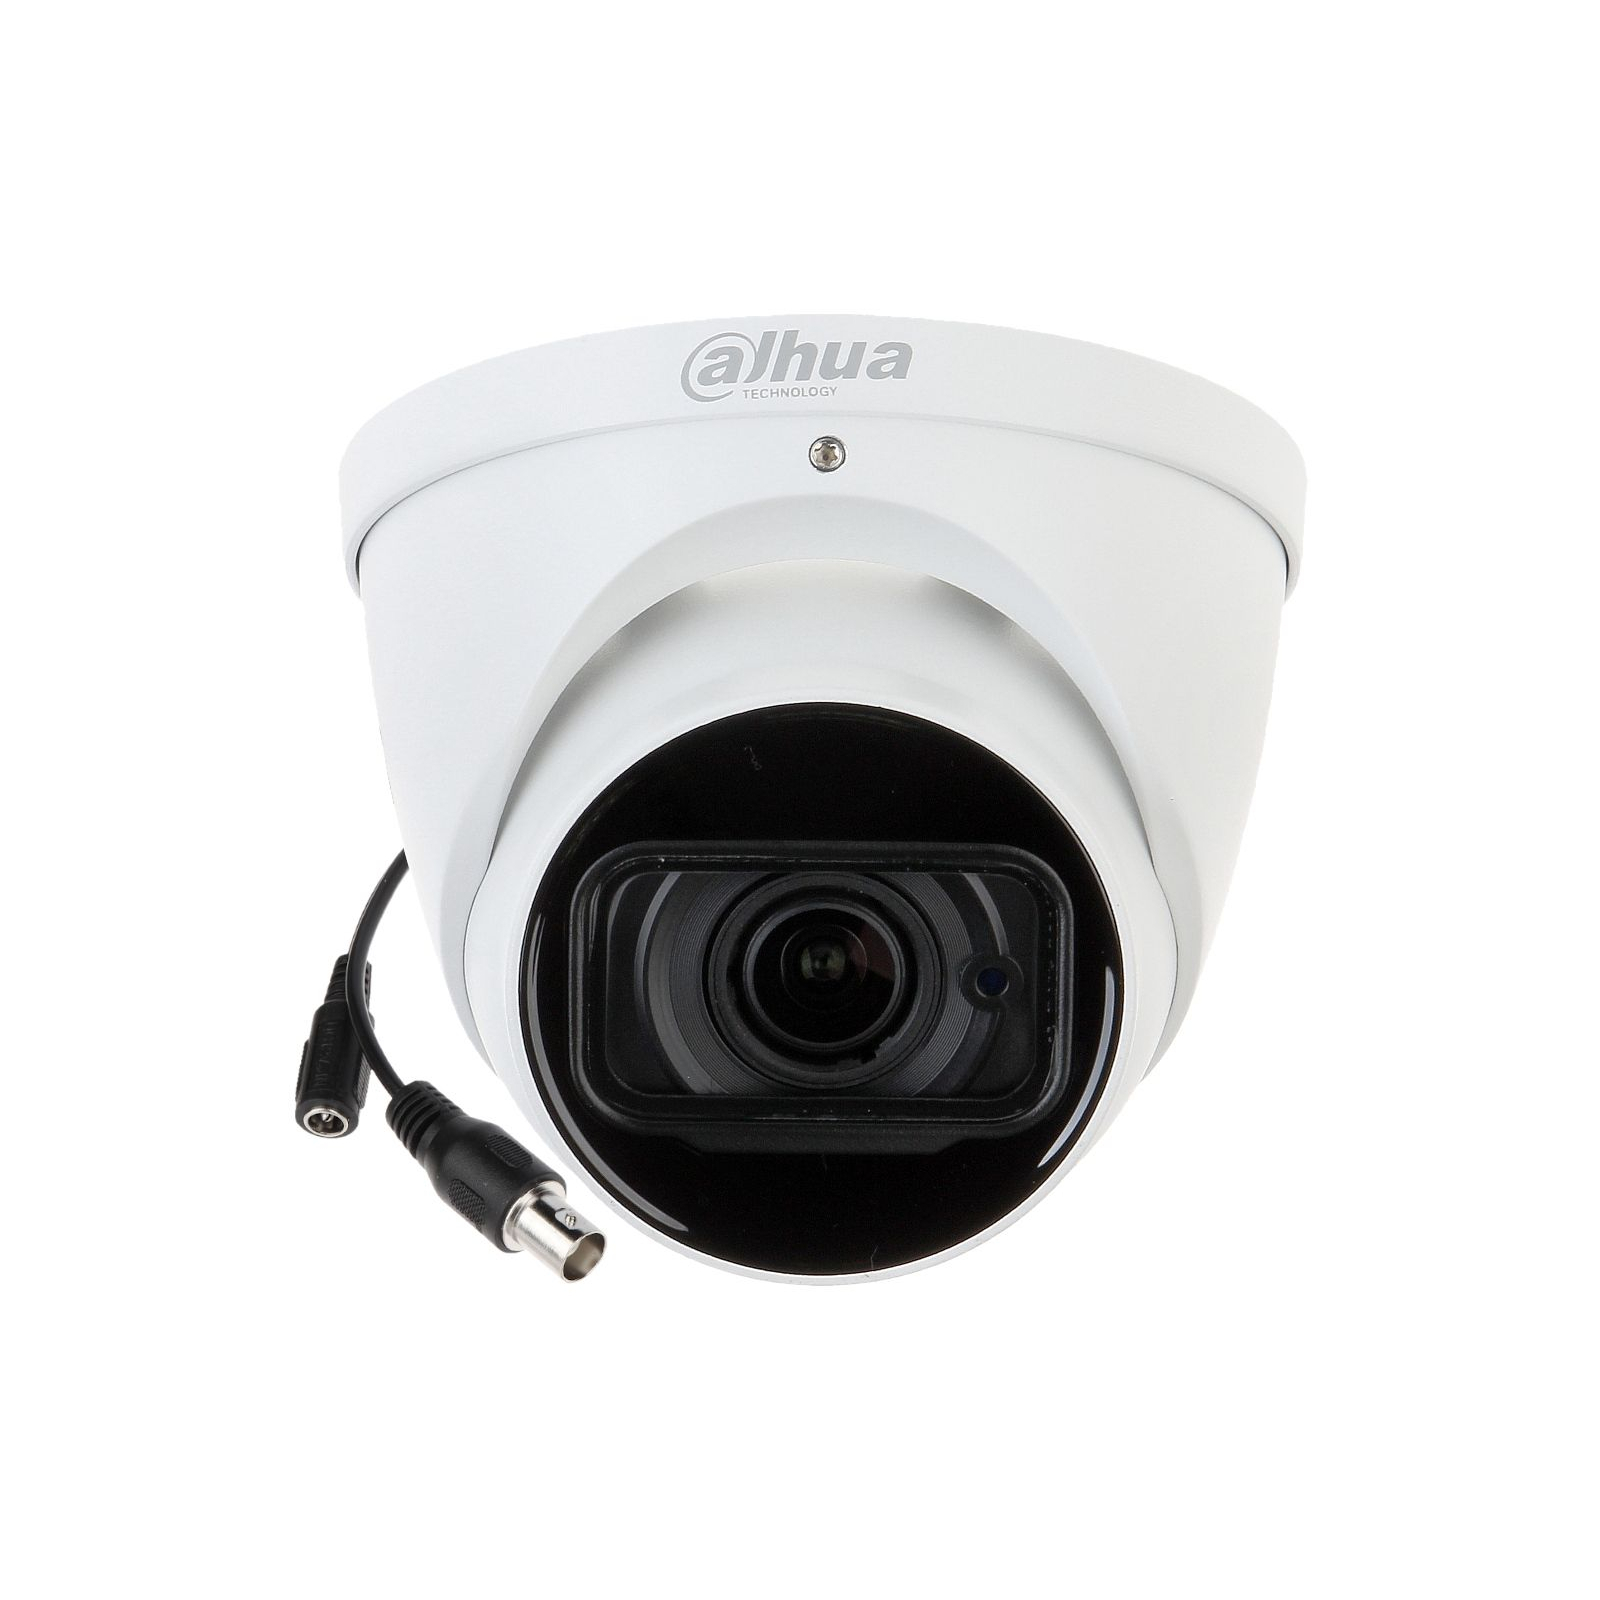 Камера видеонаблюдения Dahua DH-HAC-HDW1400TP-Z-A (2.7-12) (DH-HAC-HDW1400TP-Z-A) изображение 2